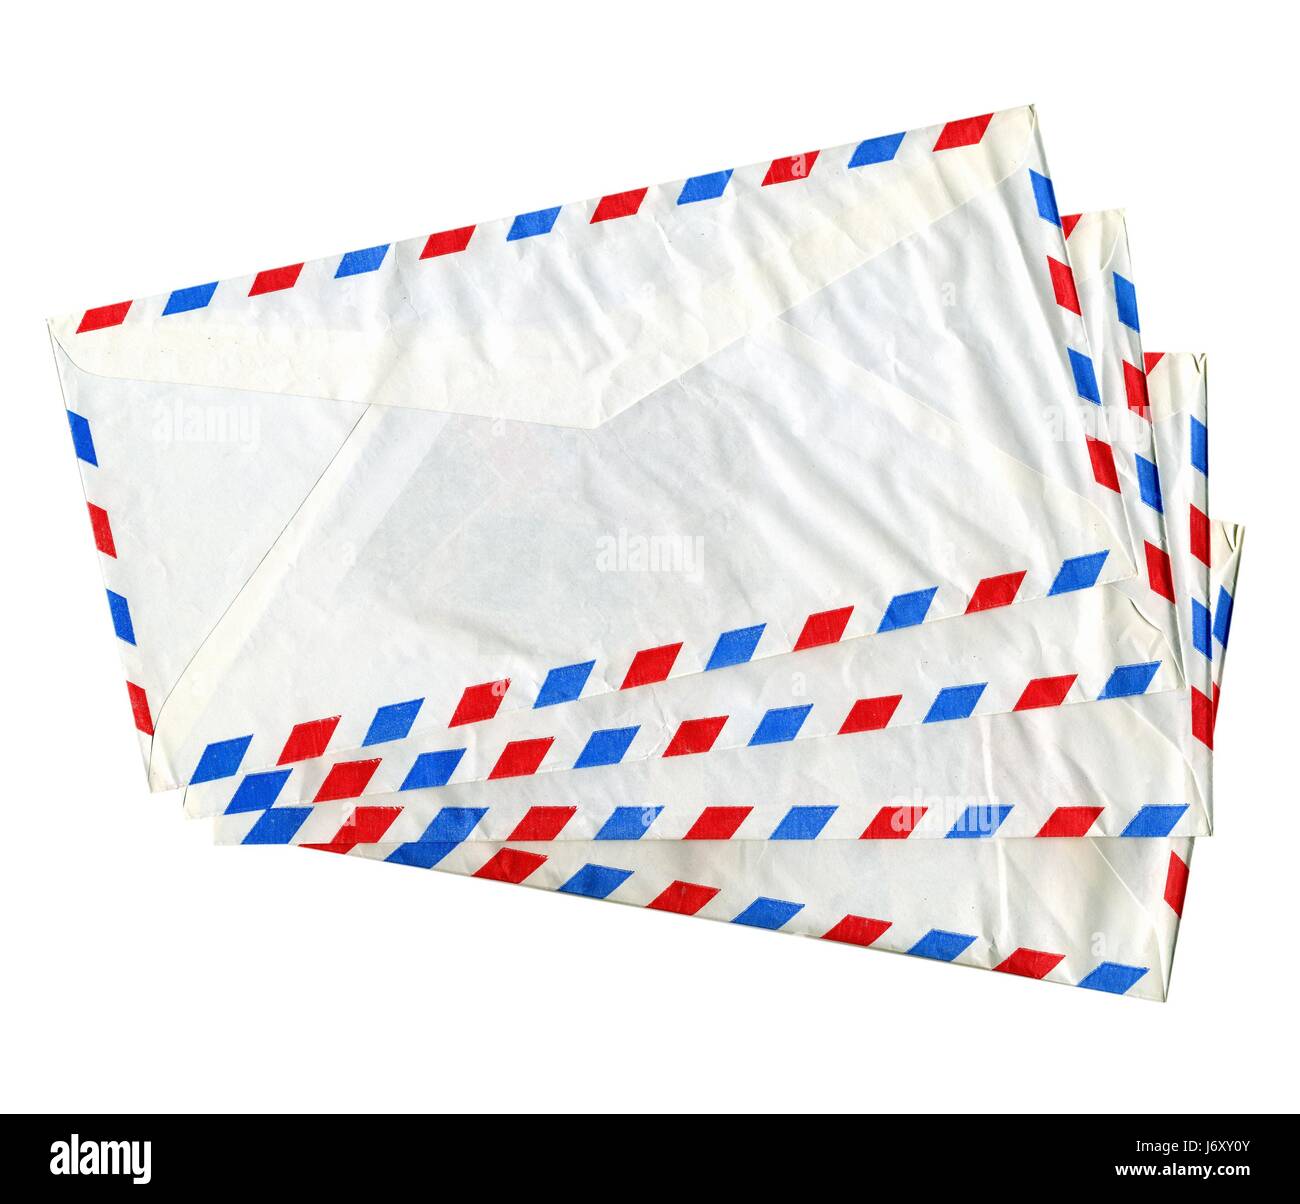 La carta postal aéreo de sobres para envíos postales carta aislada parcela  de correos Fotografía de stock - Alamy